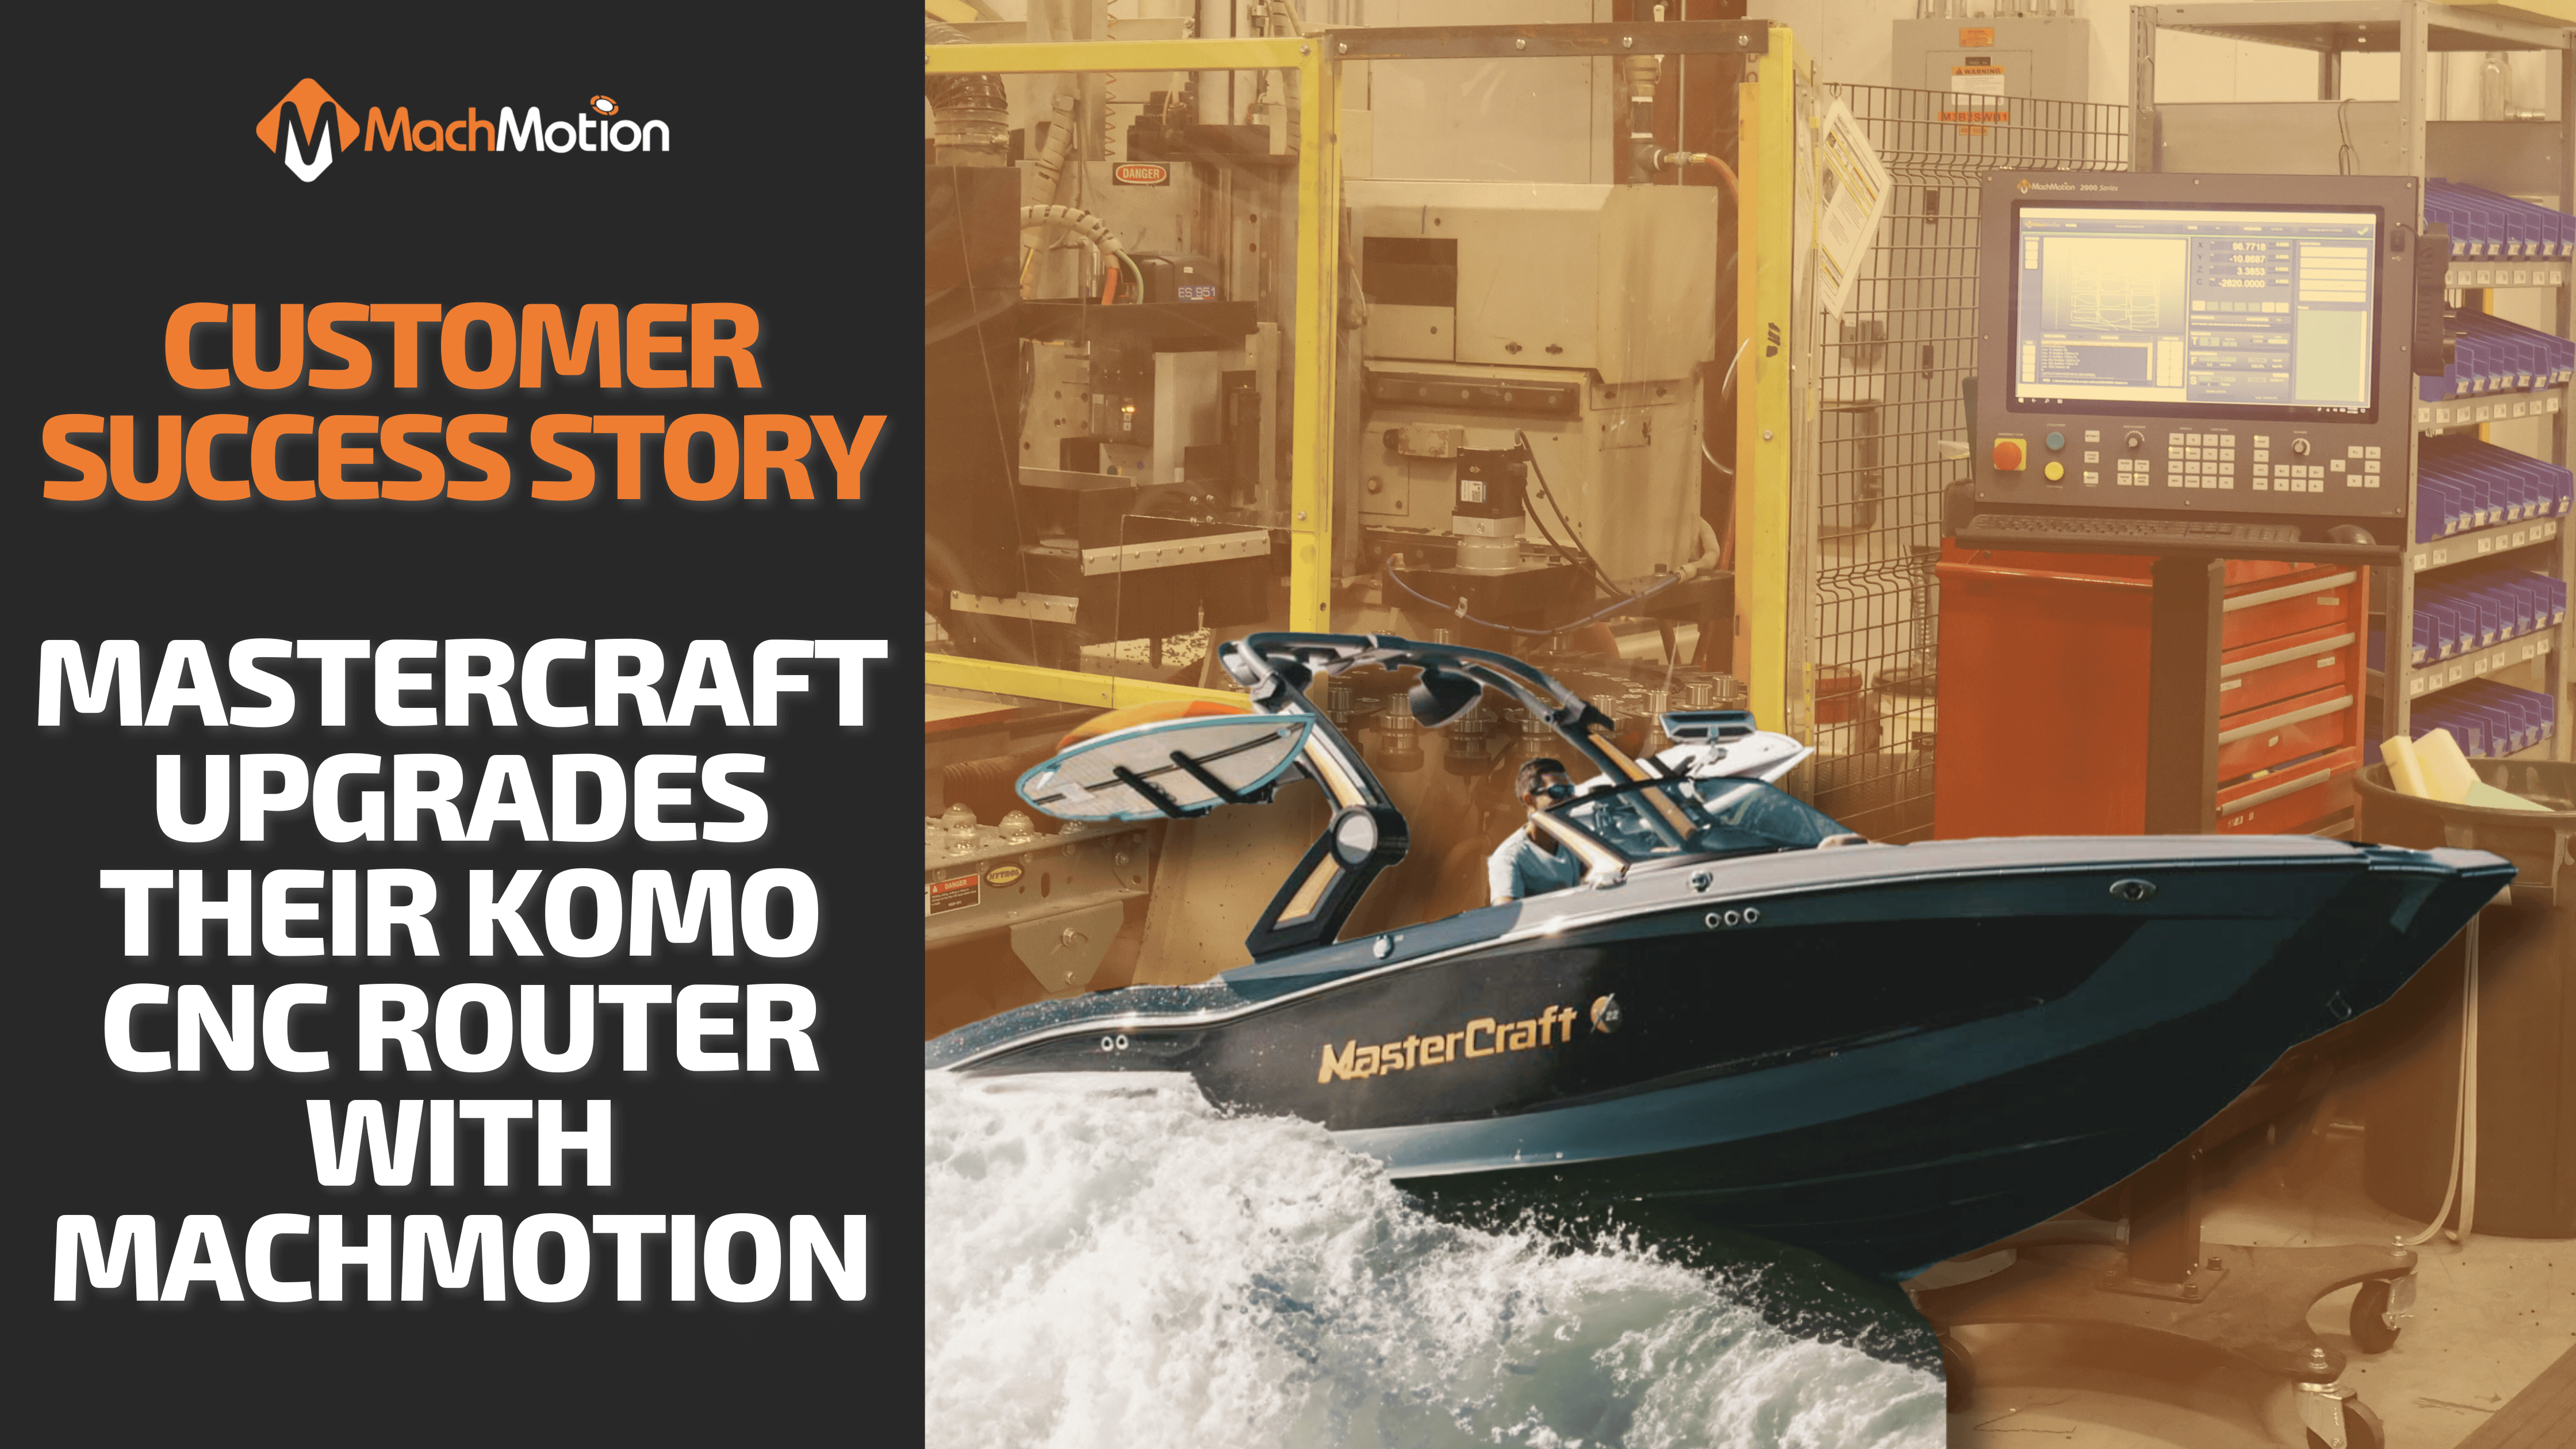 Customer Success Story: Mastercraft Boats KOMO Machinery Upgrade